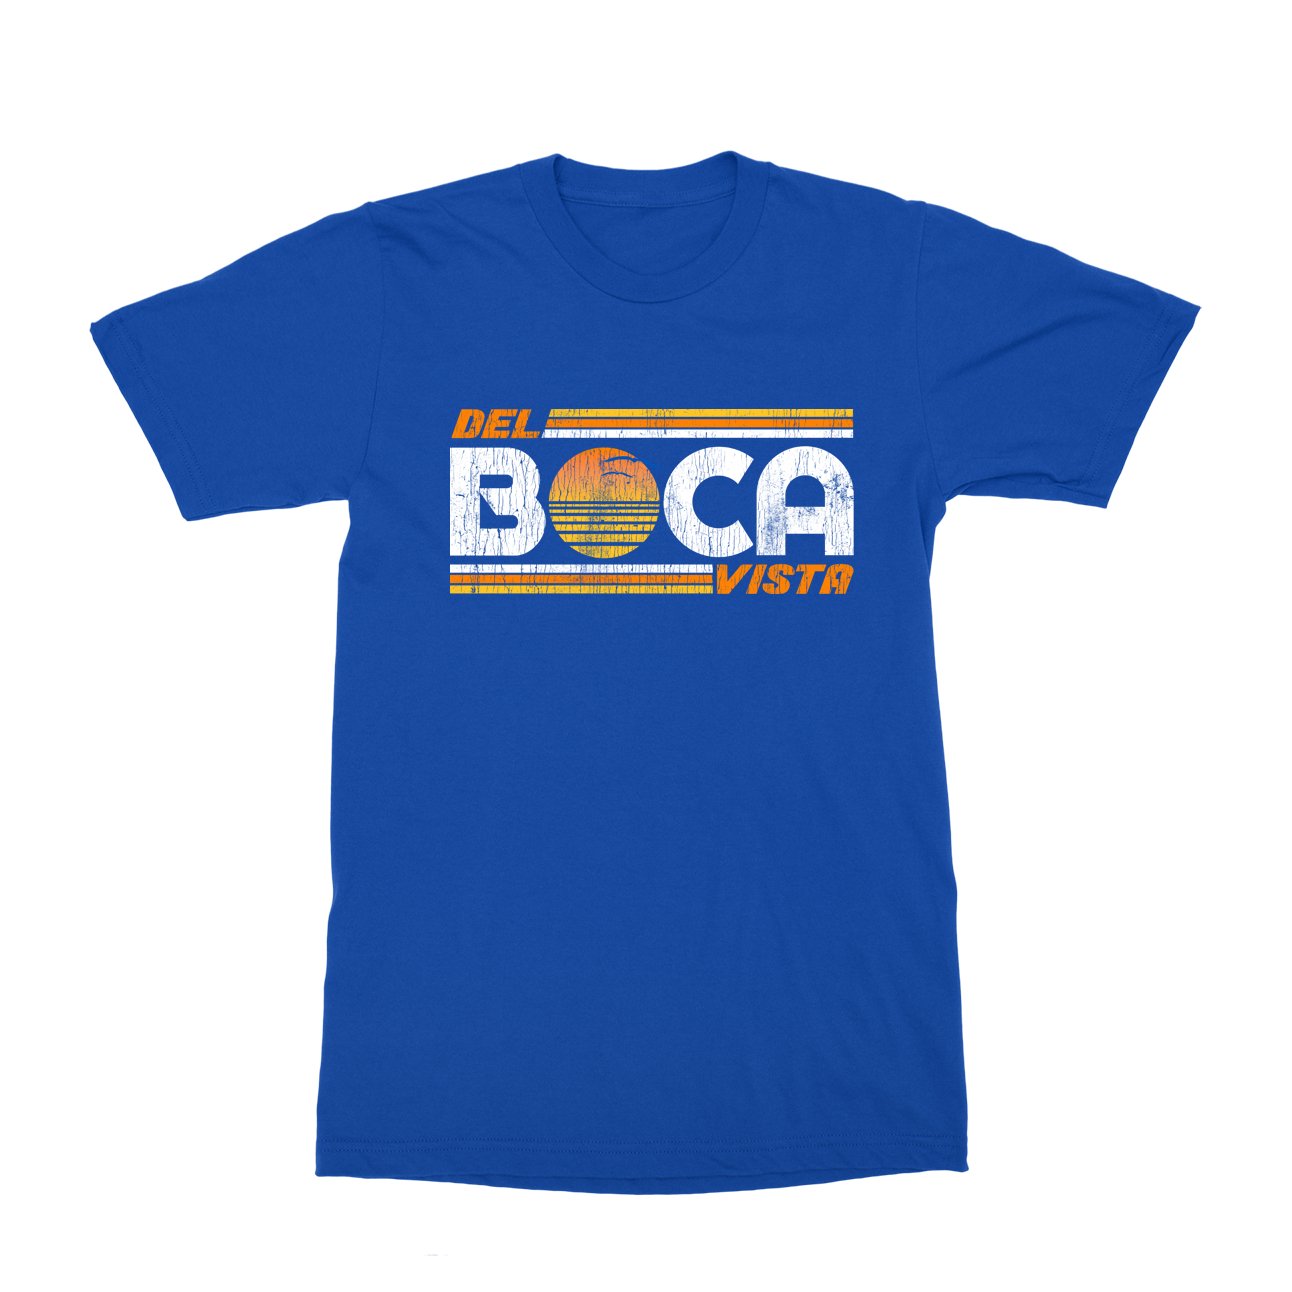 Del Boca Vista T-Shirt - Black Cat MFG -